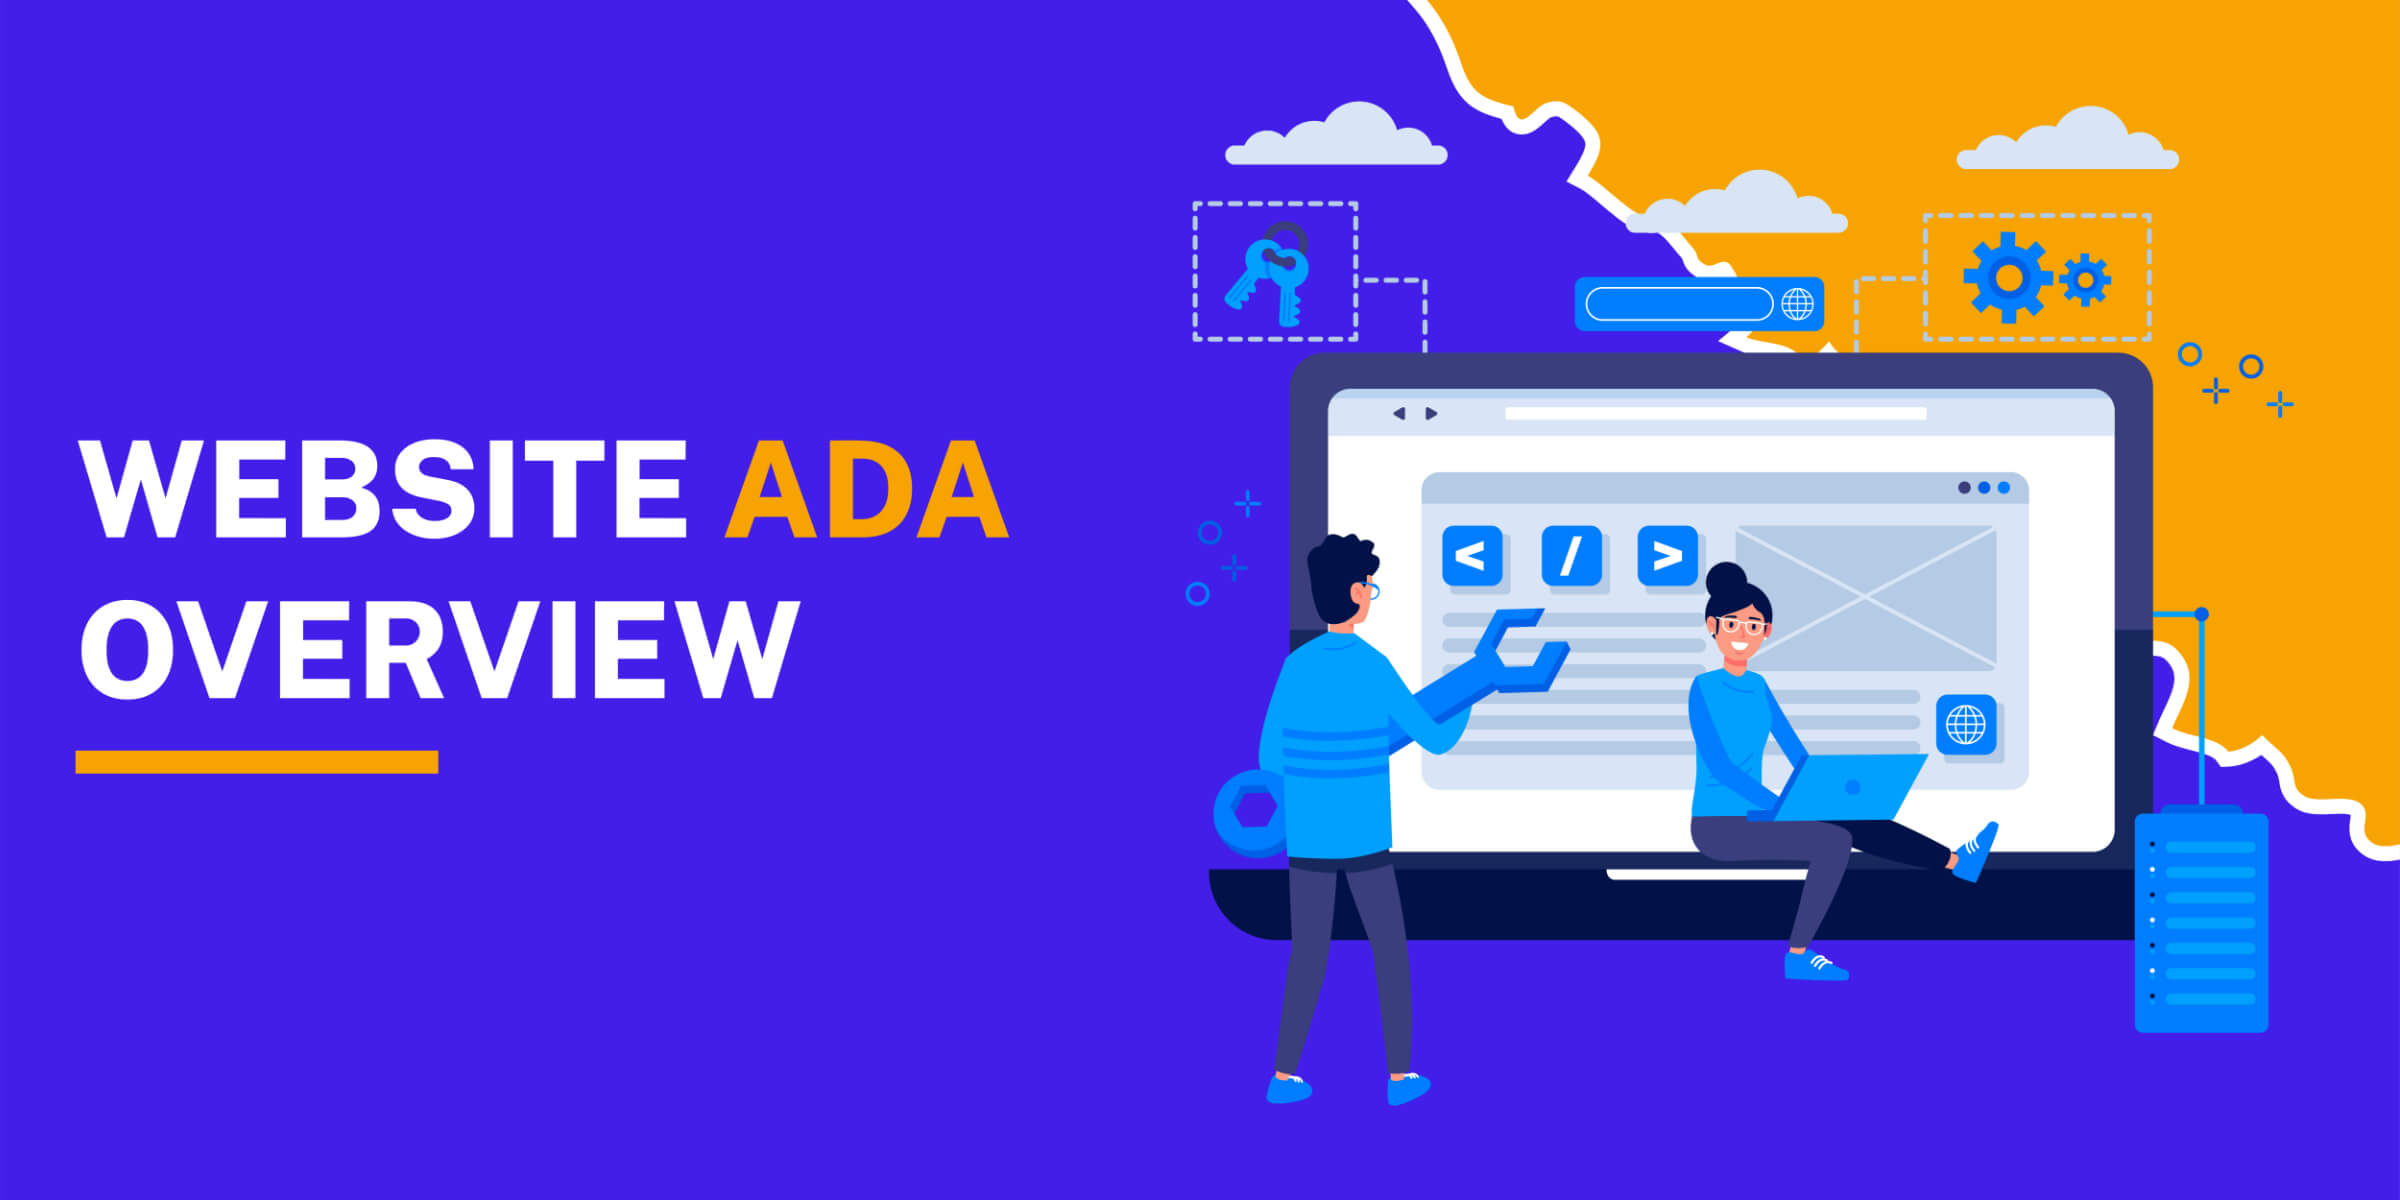 Website ADA Overview